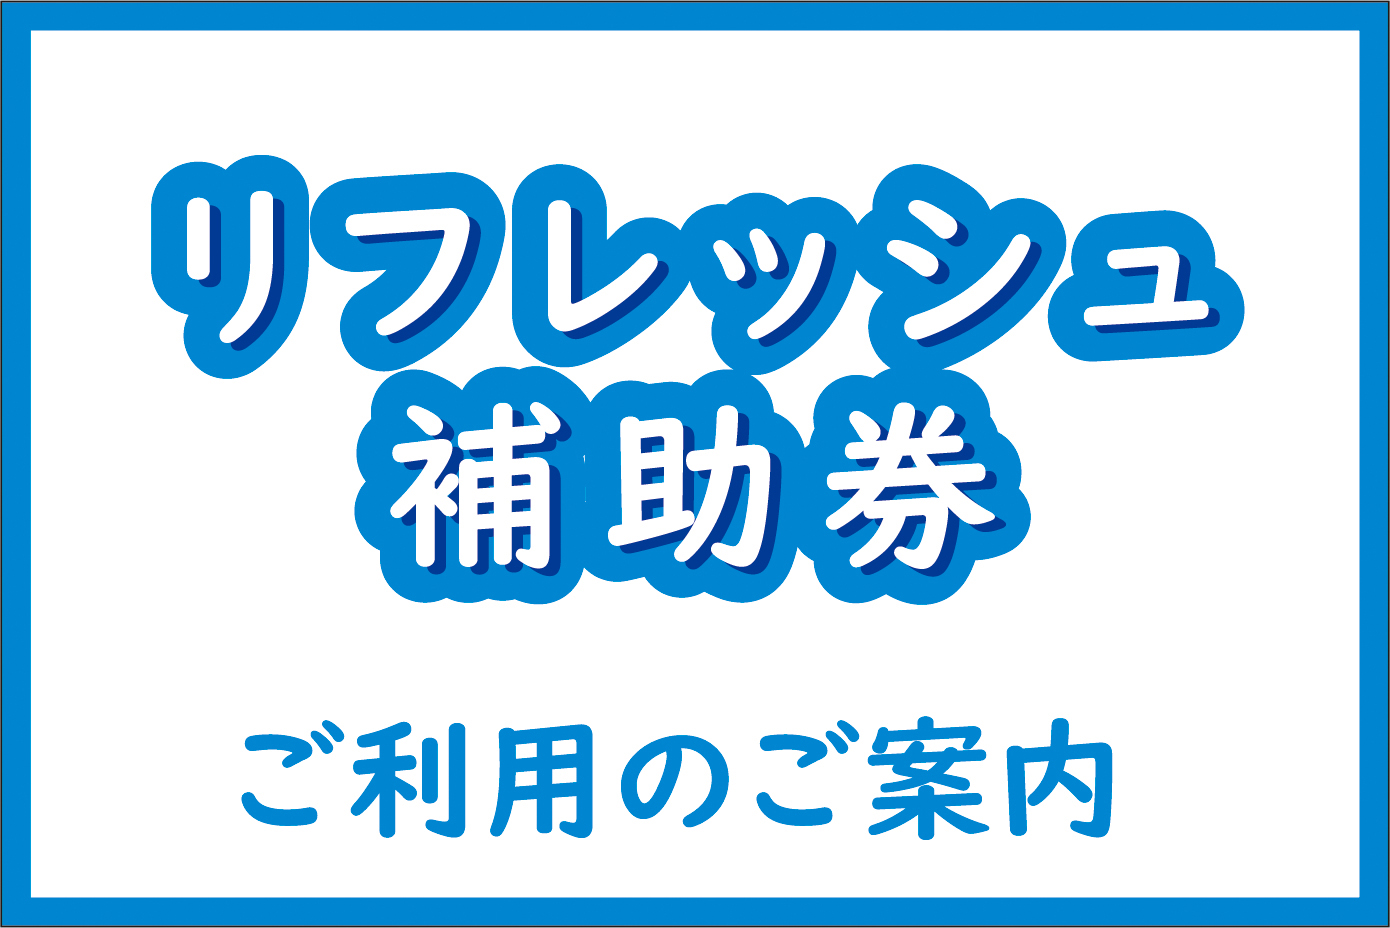 【新横浜グレイスホテル】横浜市立学校教職員互助会のリフレッシュ補助券をご利用いただけます